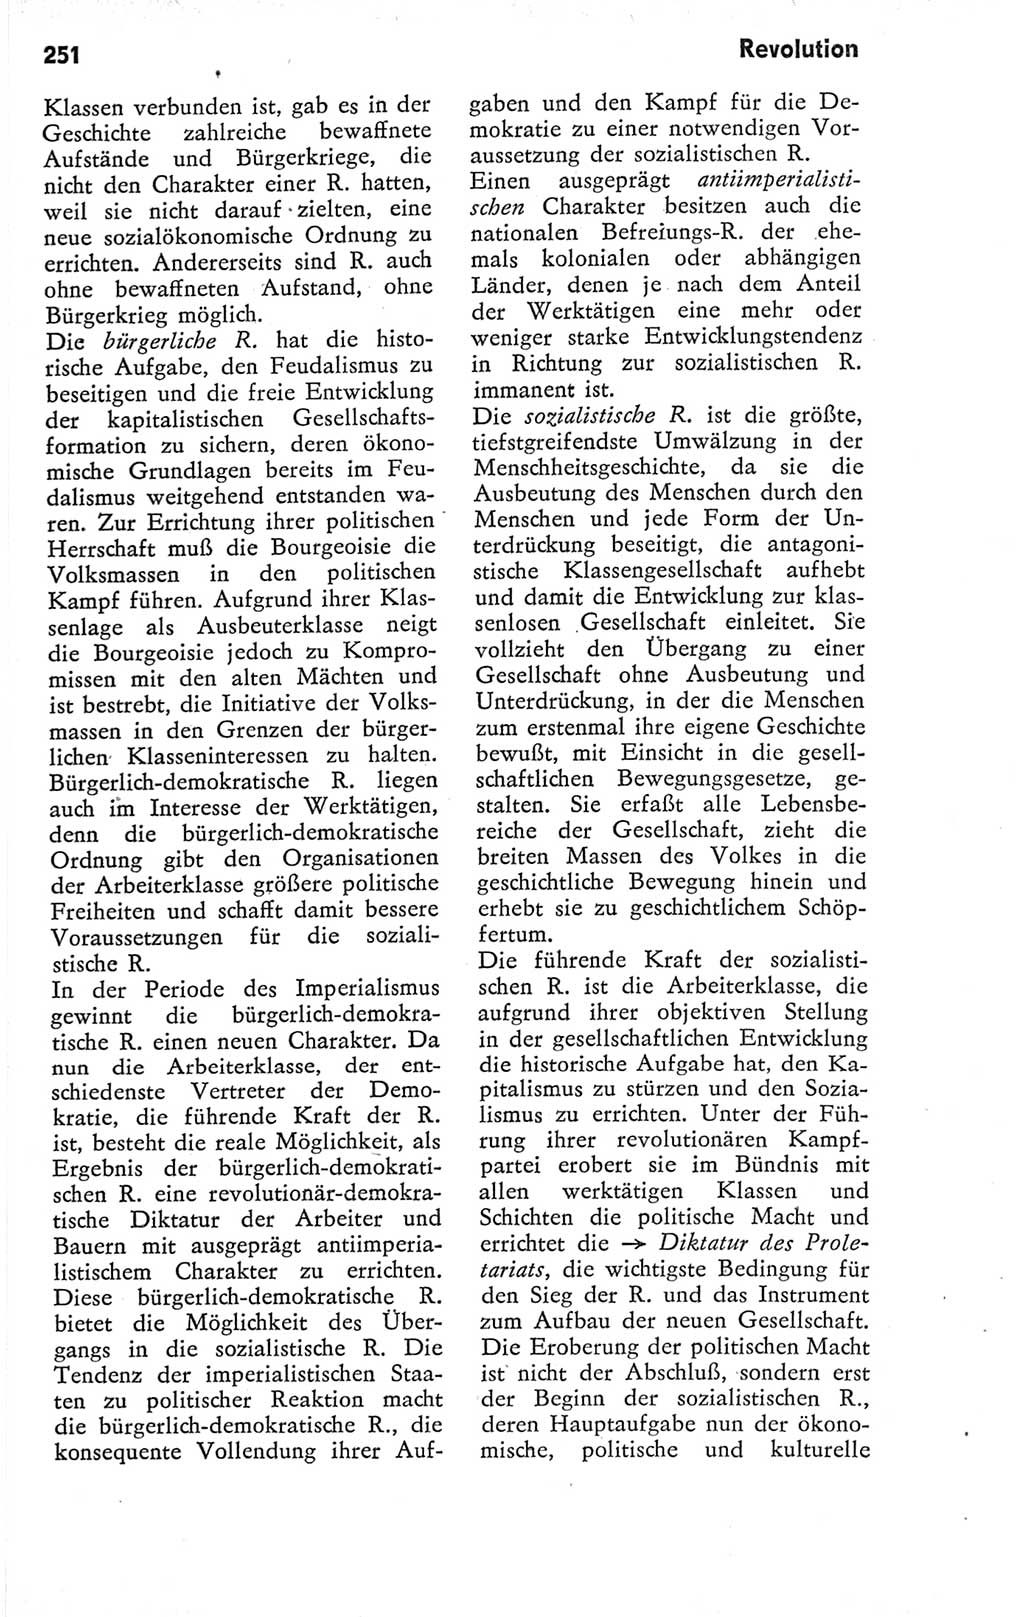 Kleines Wörterbuch der marxistisch-leninistischen Philosophie [Deutsche Demokratische Republik (DDR)] 1974, Seite 251 (Kl. Wb. ML Phil. DDR 1974, S. 251)